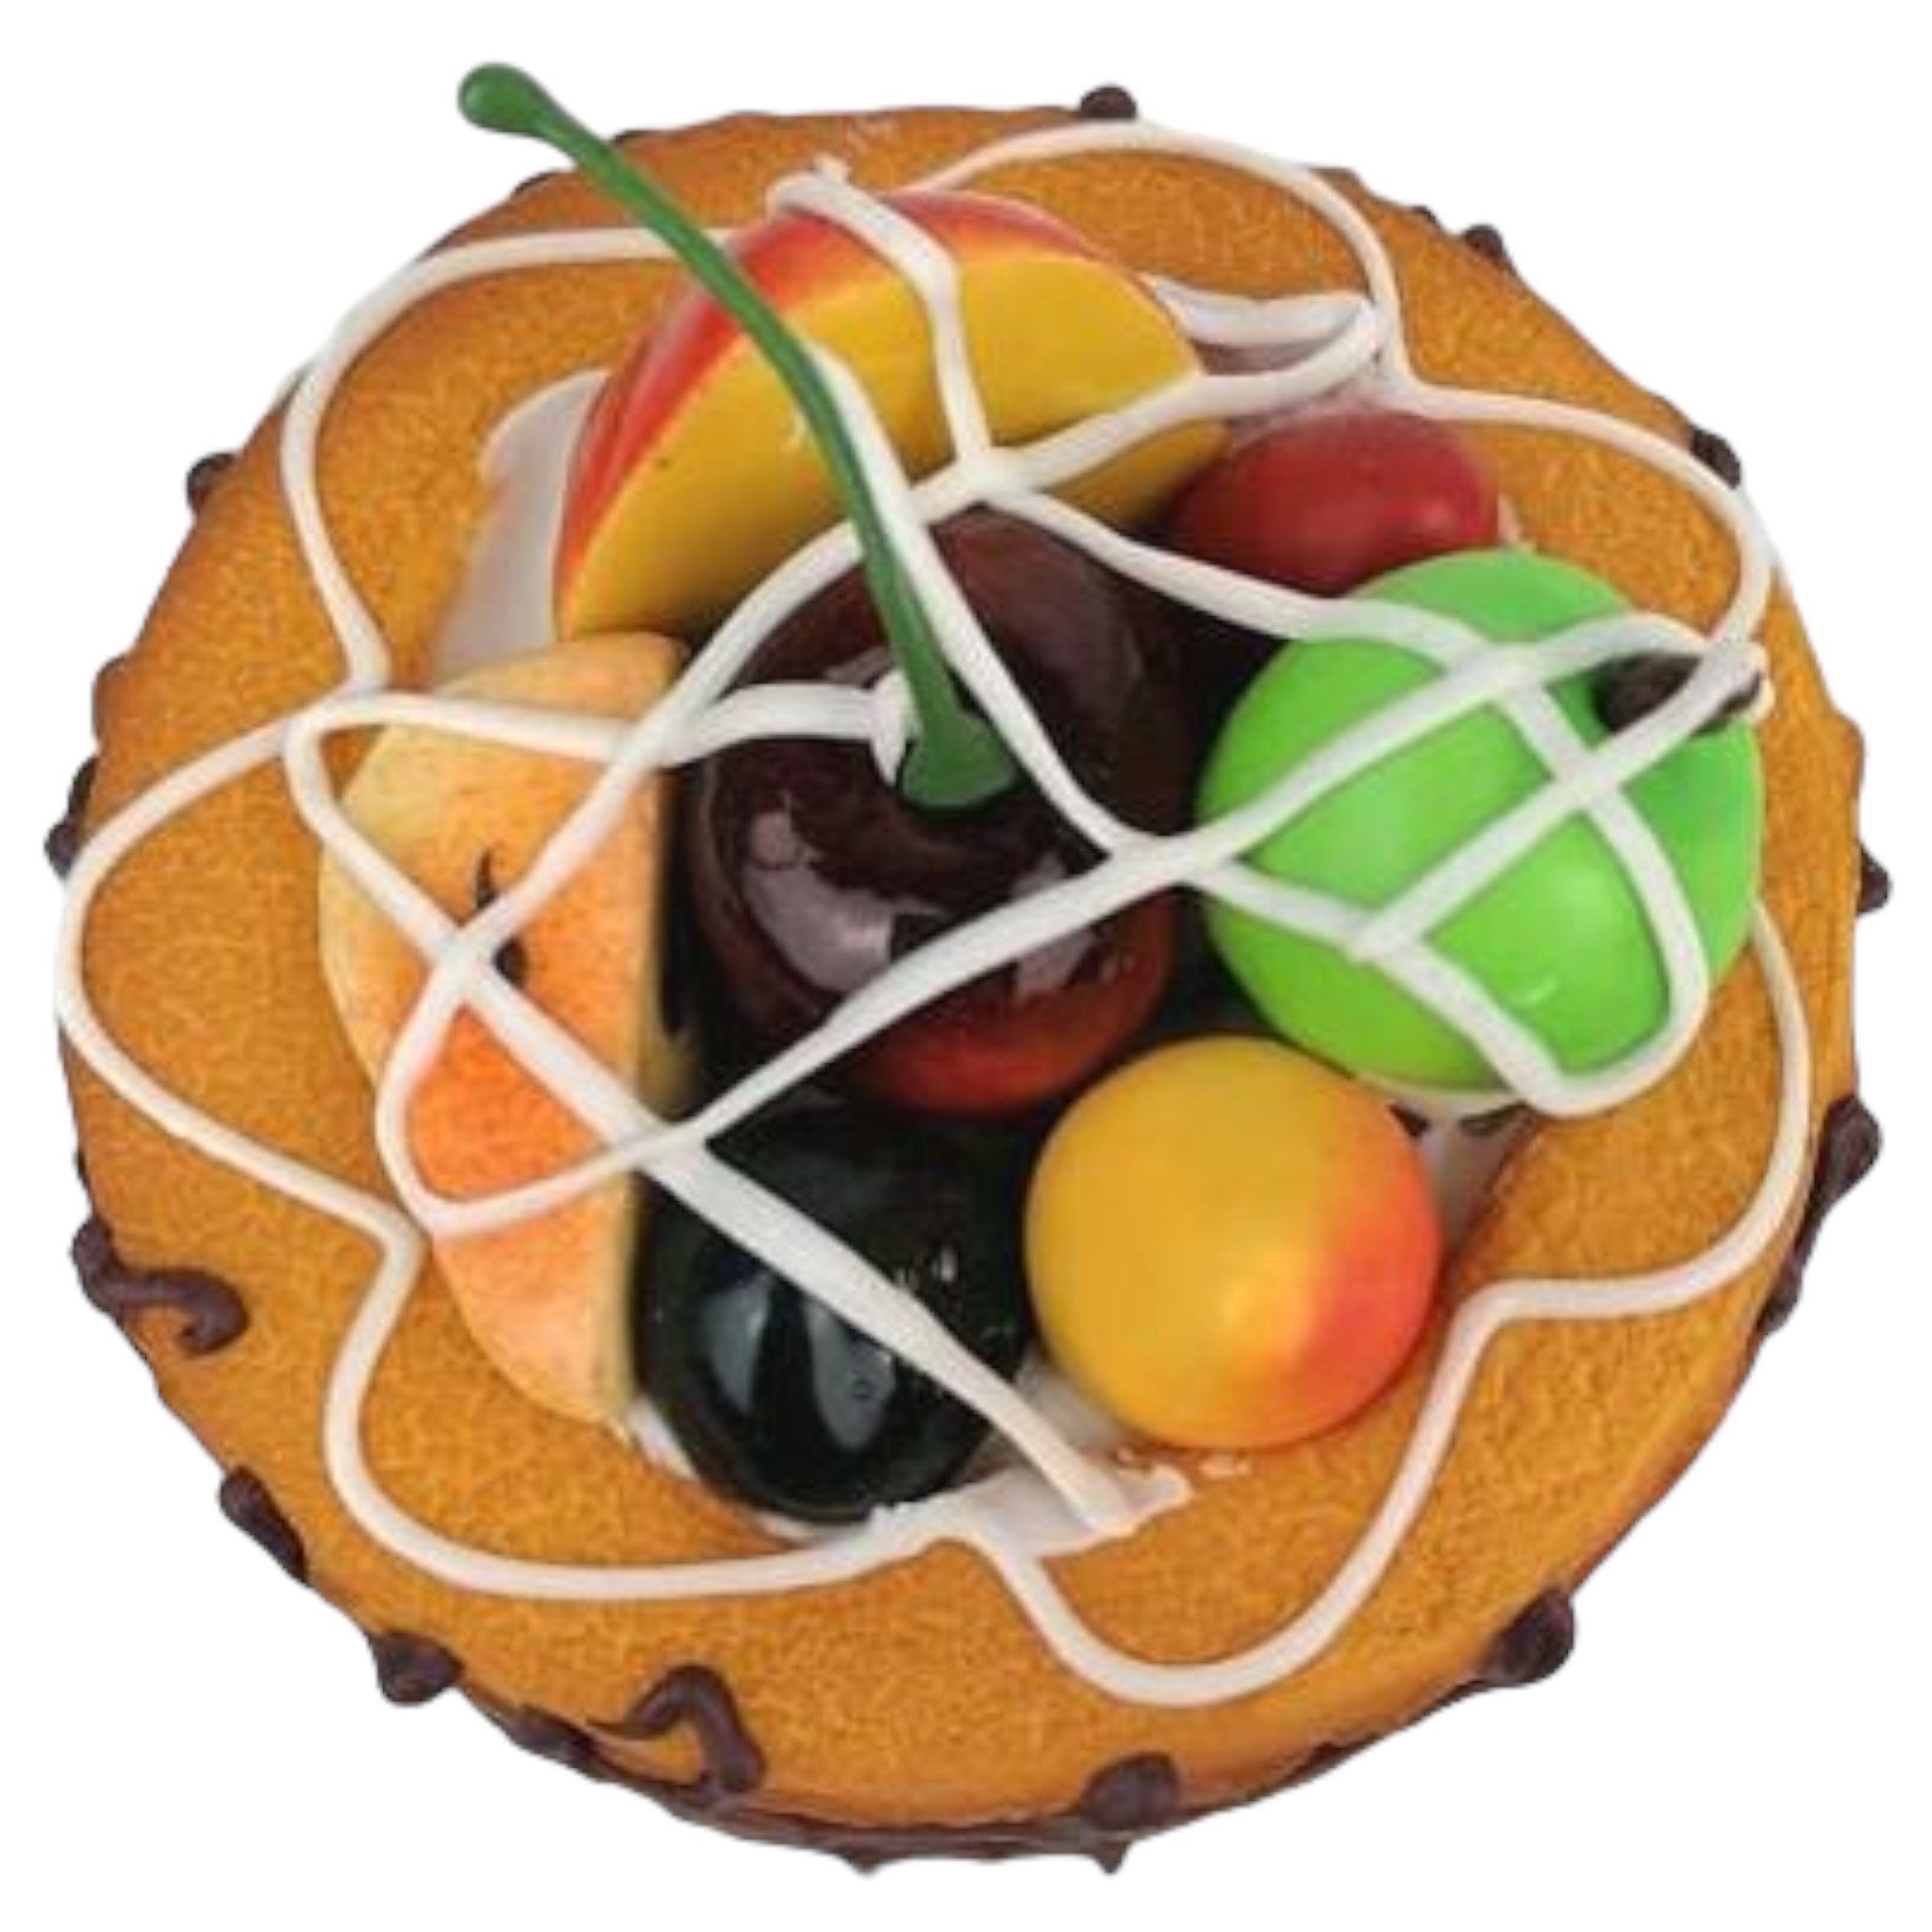 DekoTown Kuchen Gestecke 9cm, Deko mit Obst Törtchen